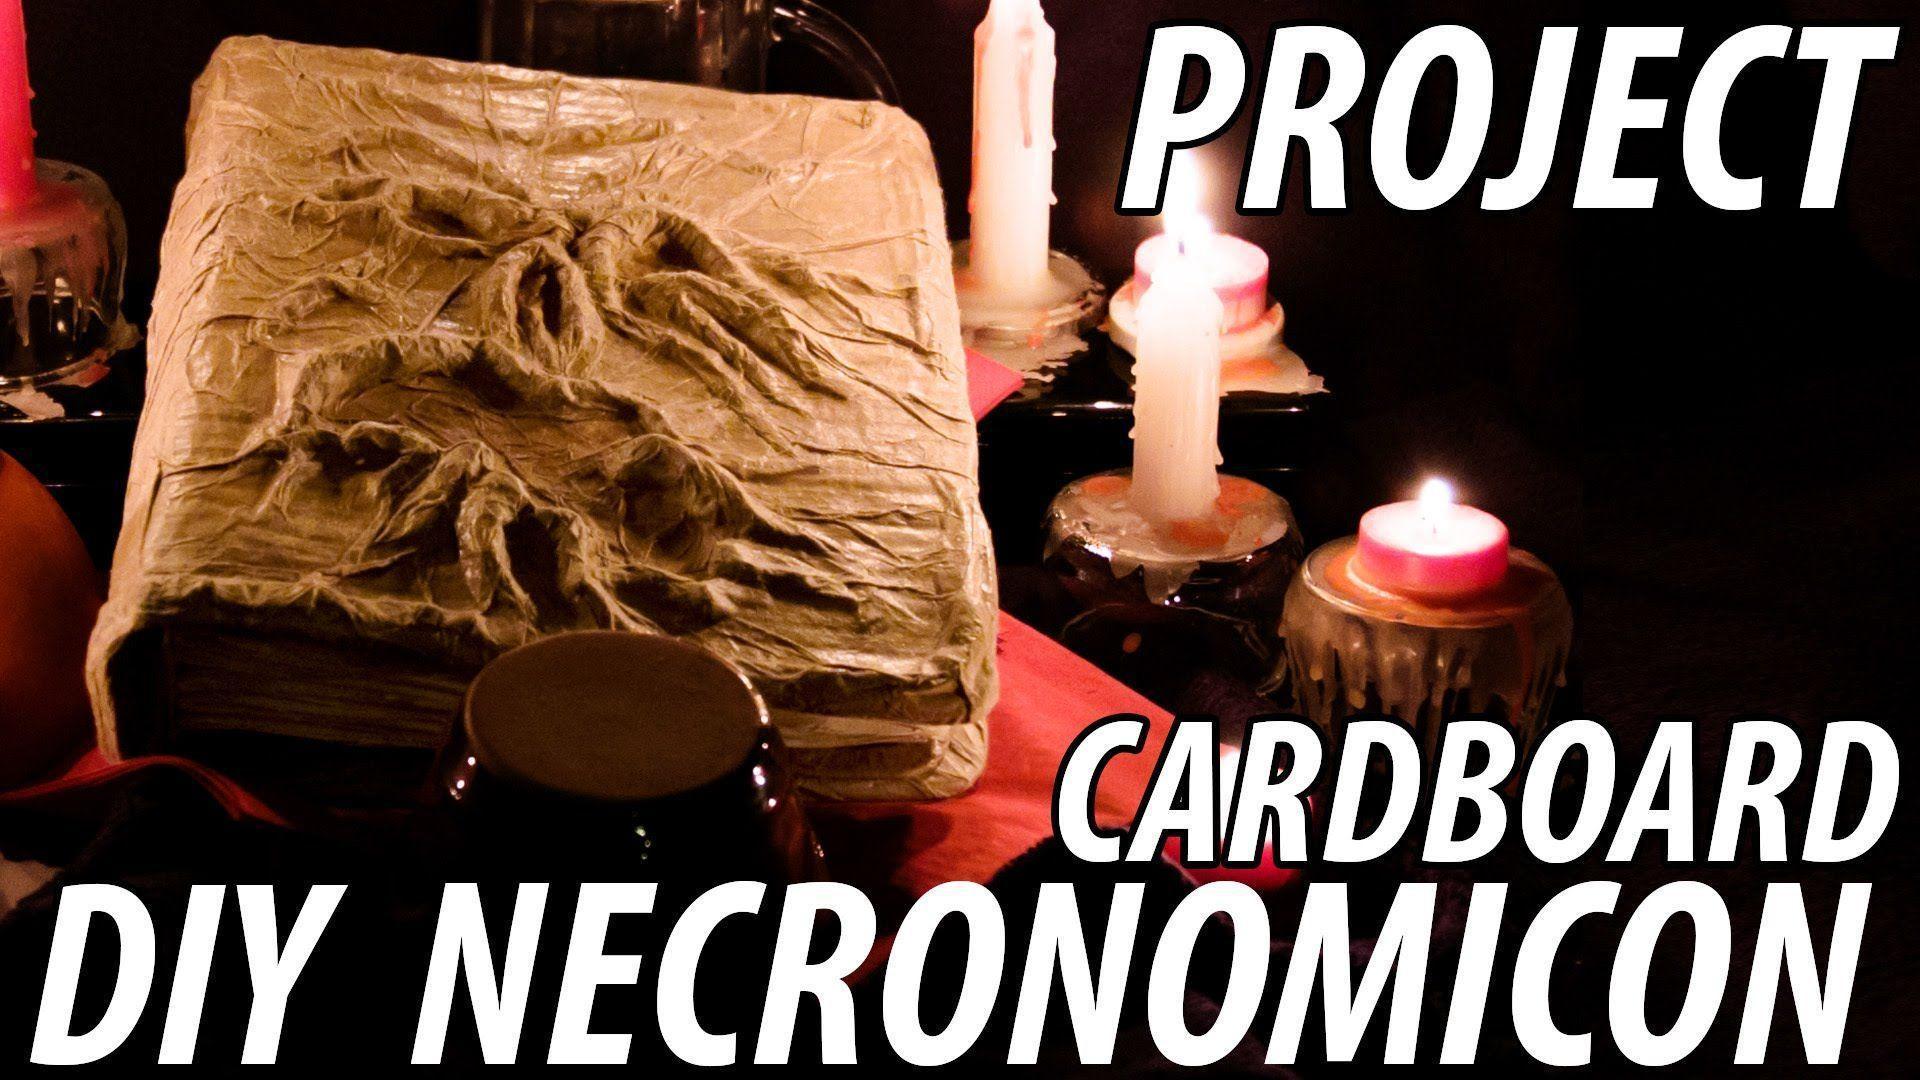 The Evil Dead Necronomicon Diy Cardboard Project